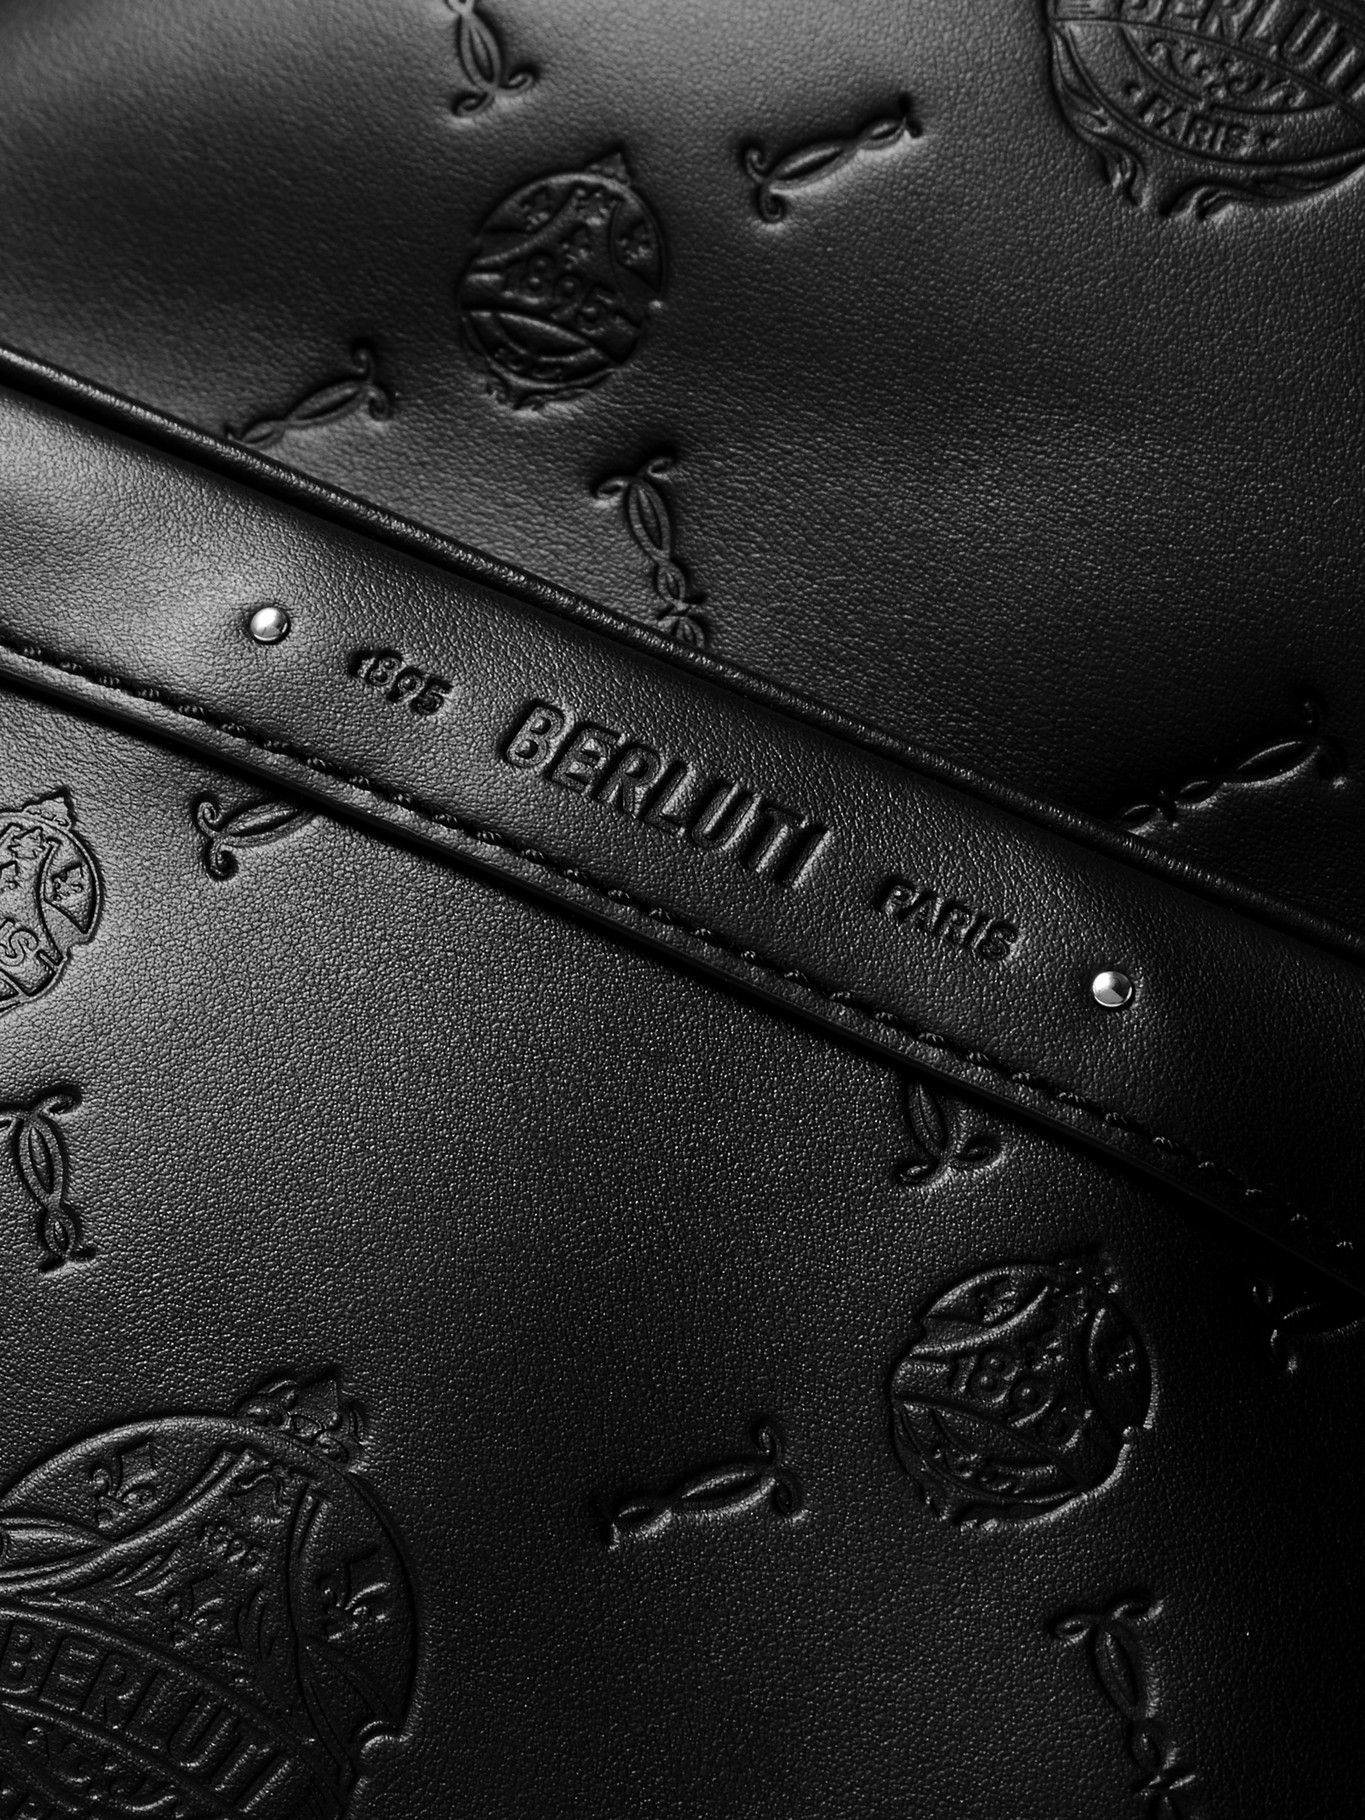 Berluti - Logo-Debossed Leather Backpack Berluti